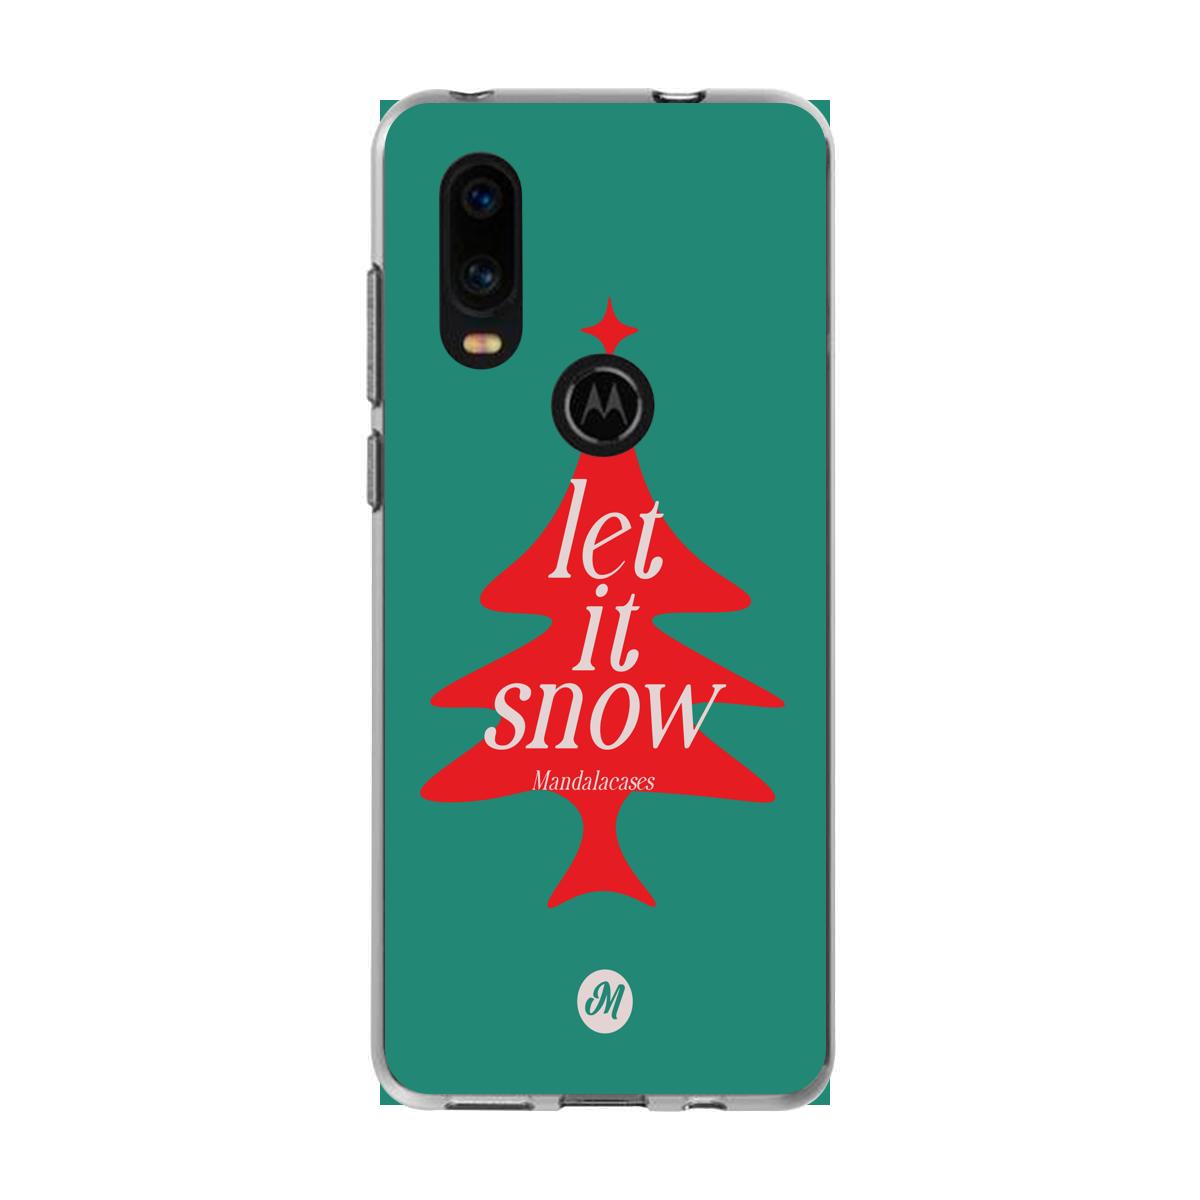 Cases para Motorola P40 Let it snow - Mandala Cases